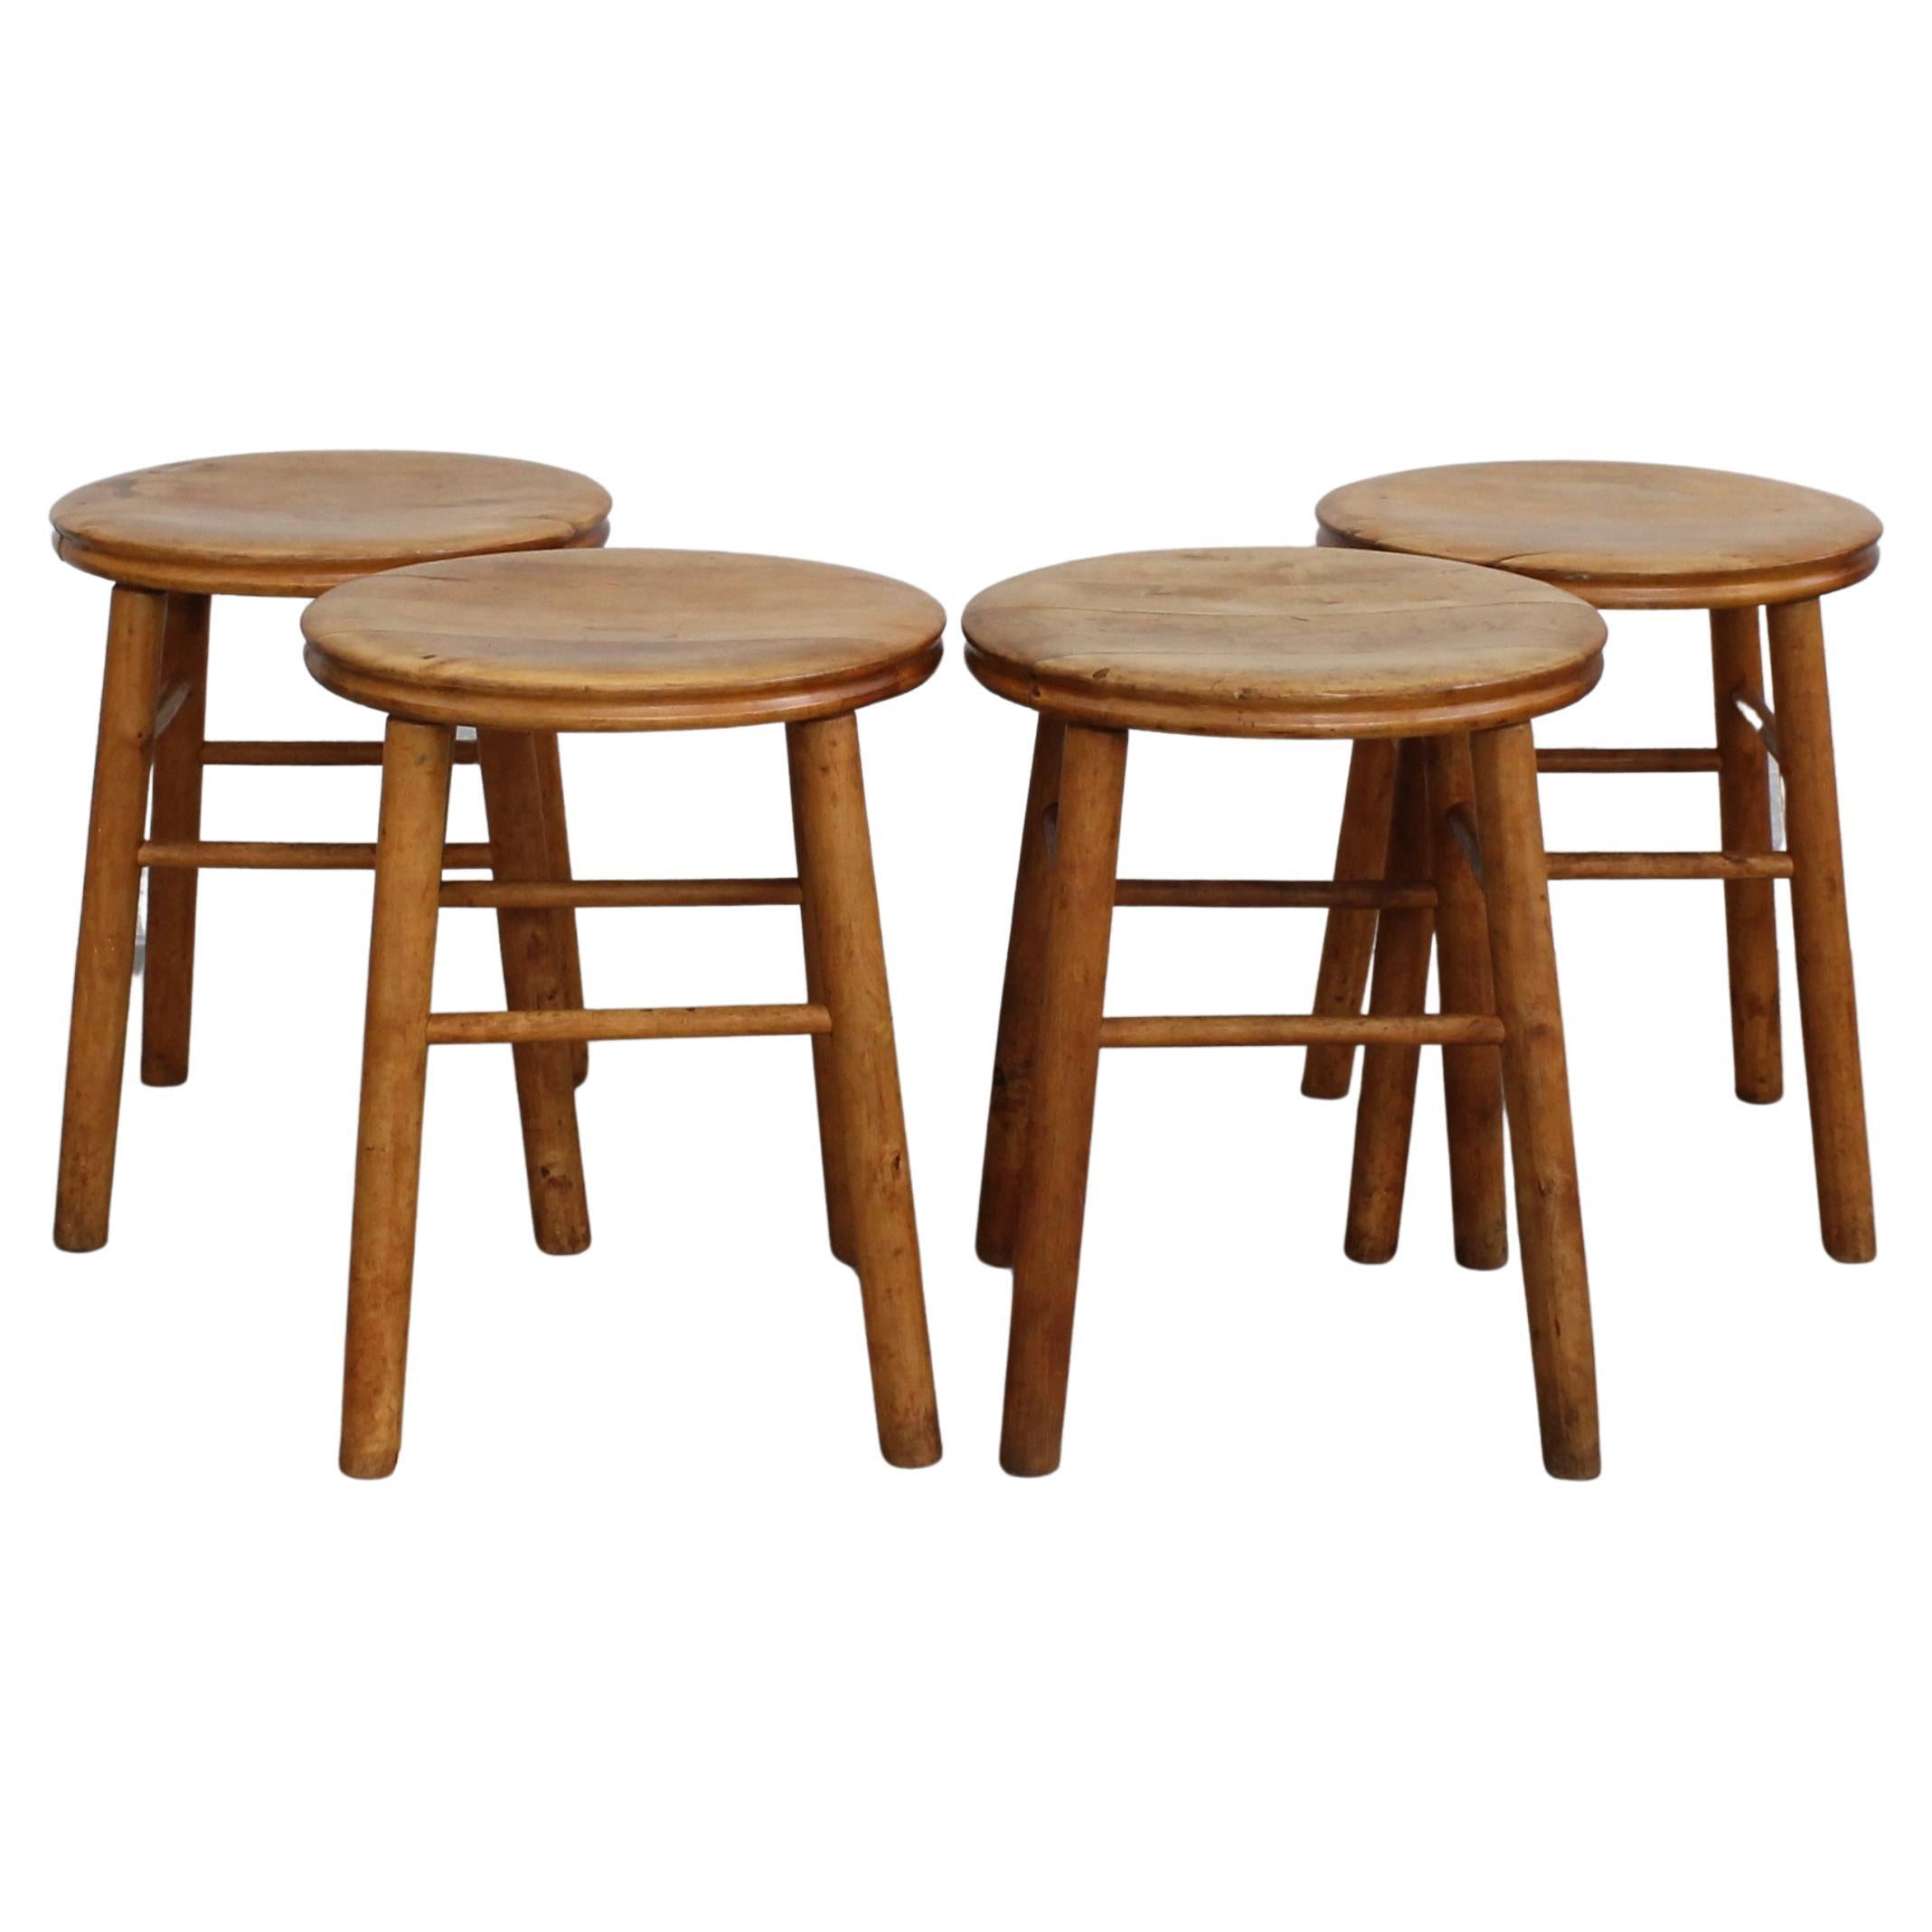 Four modernist birch stools, minimalist design, Sweden, 1930s